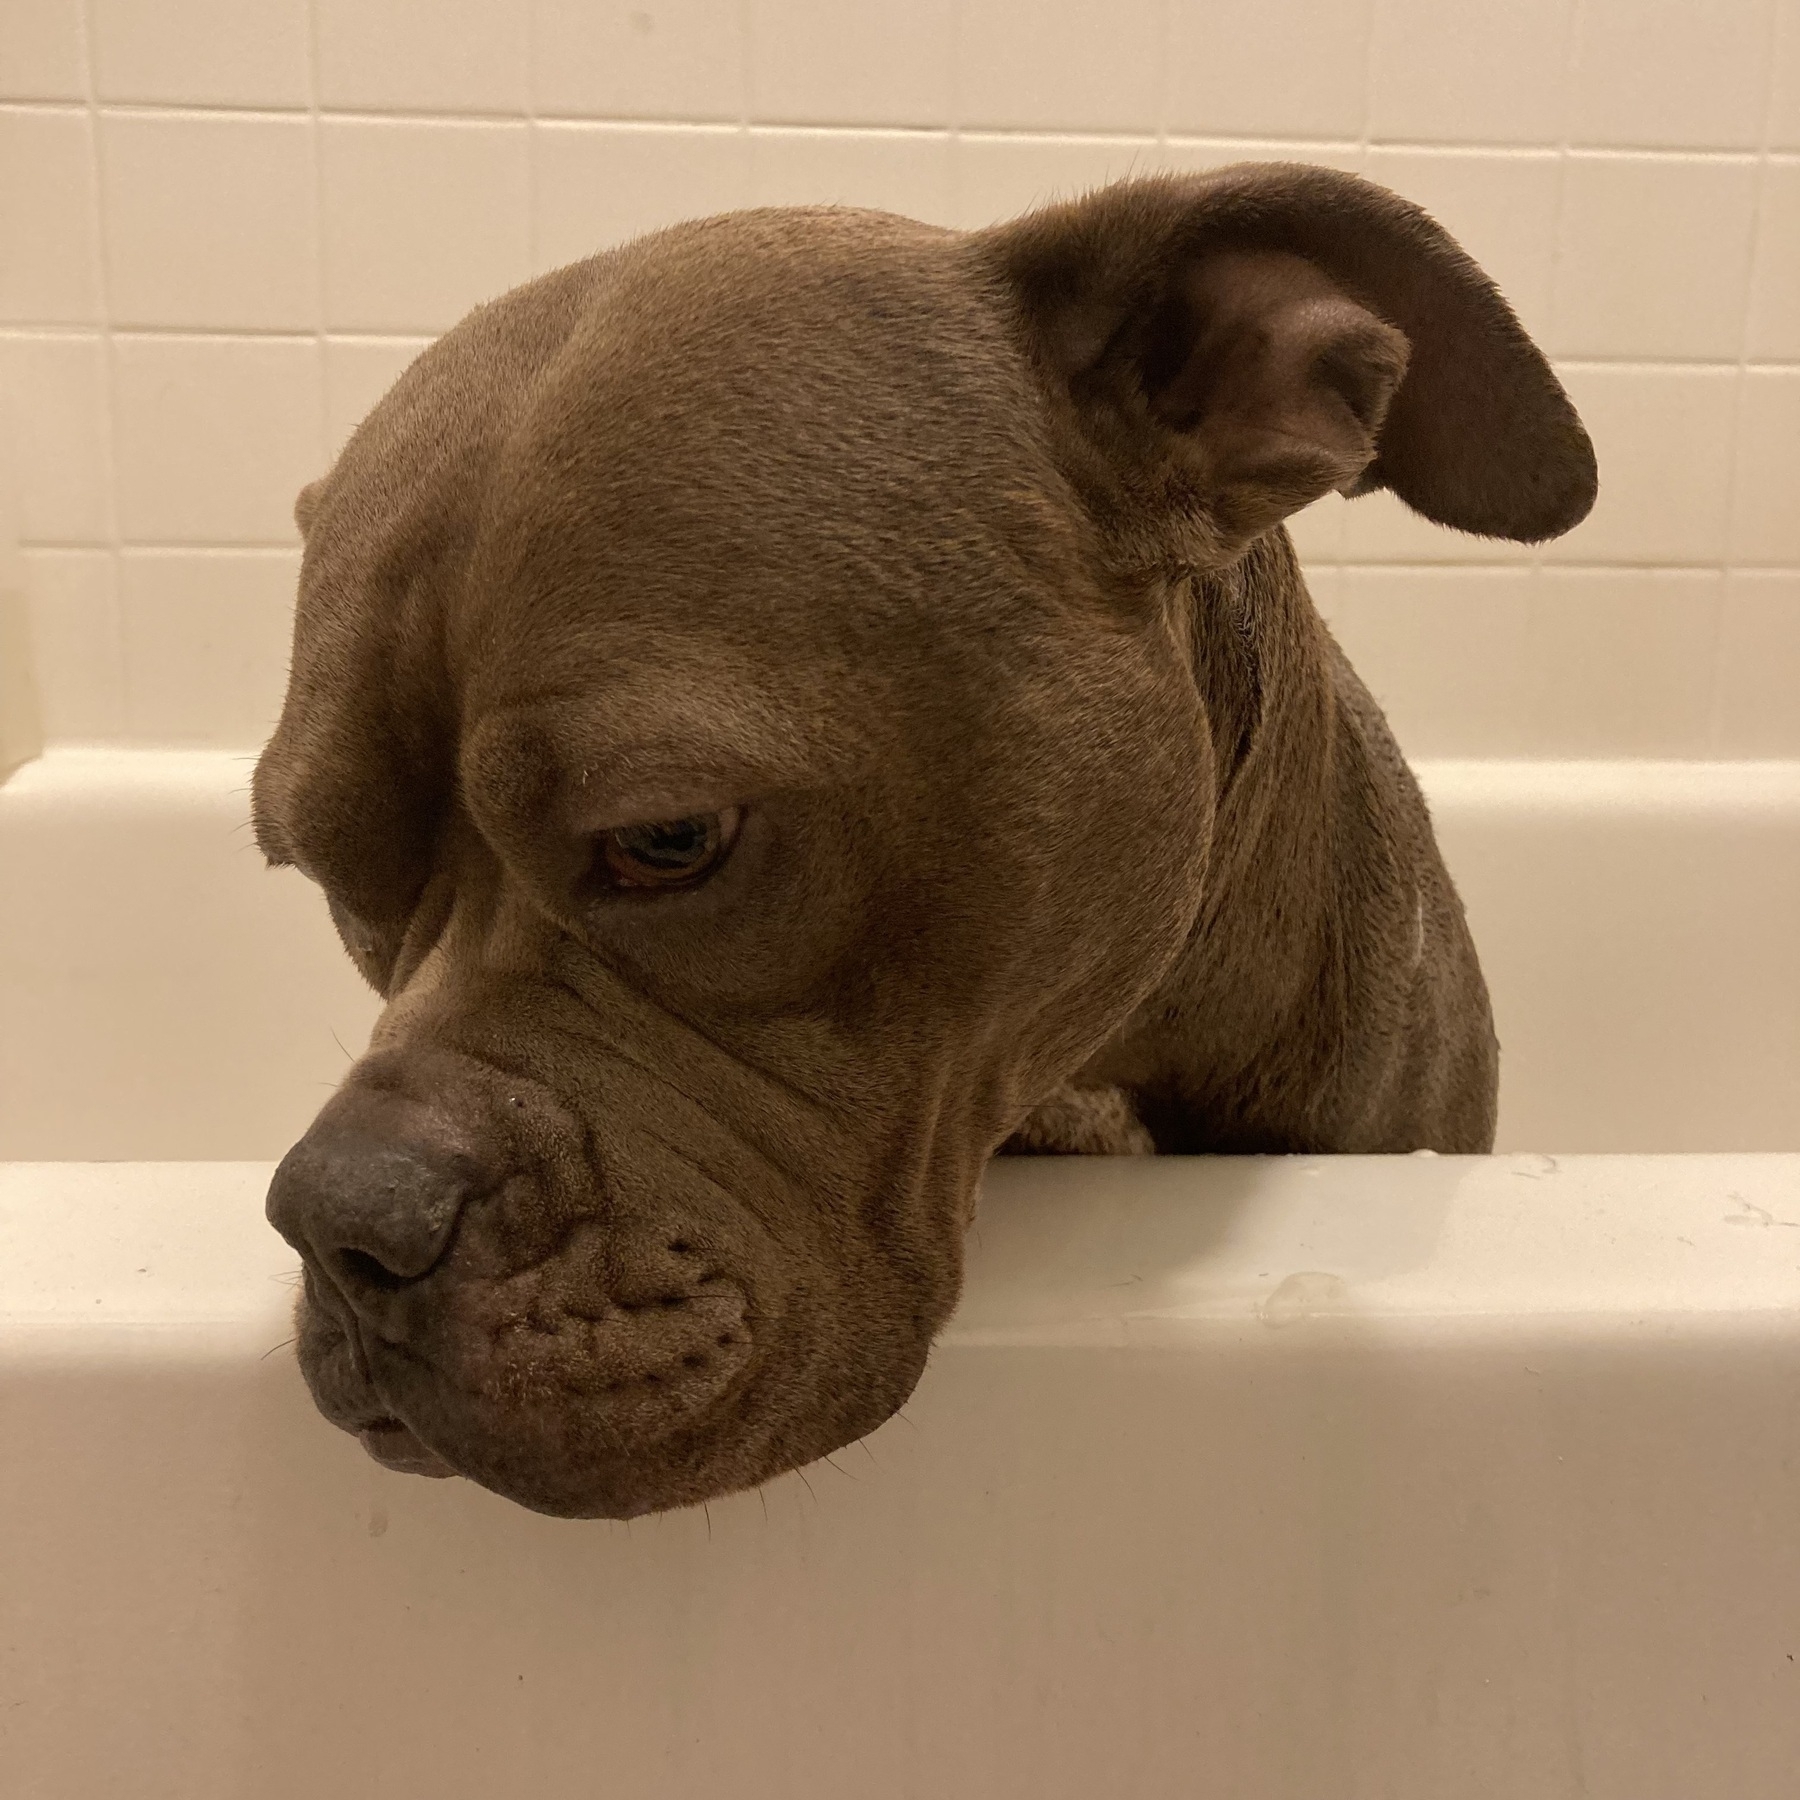 Dog looking sad in the bathtub. 